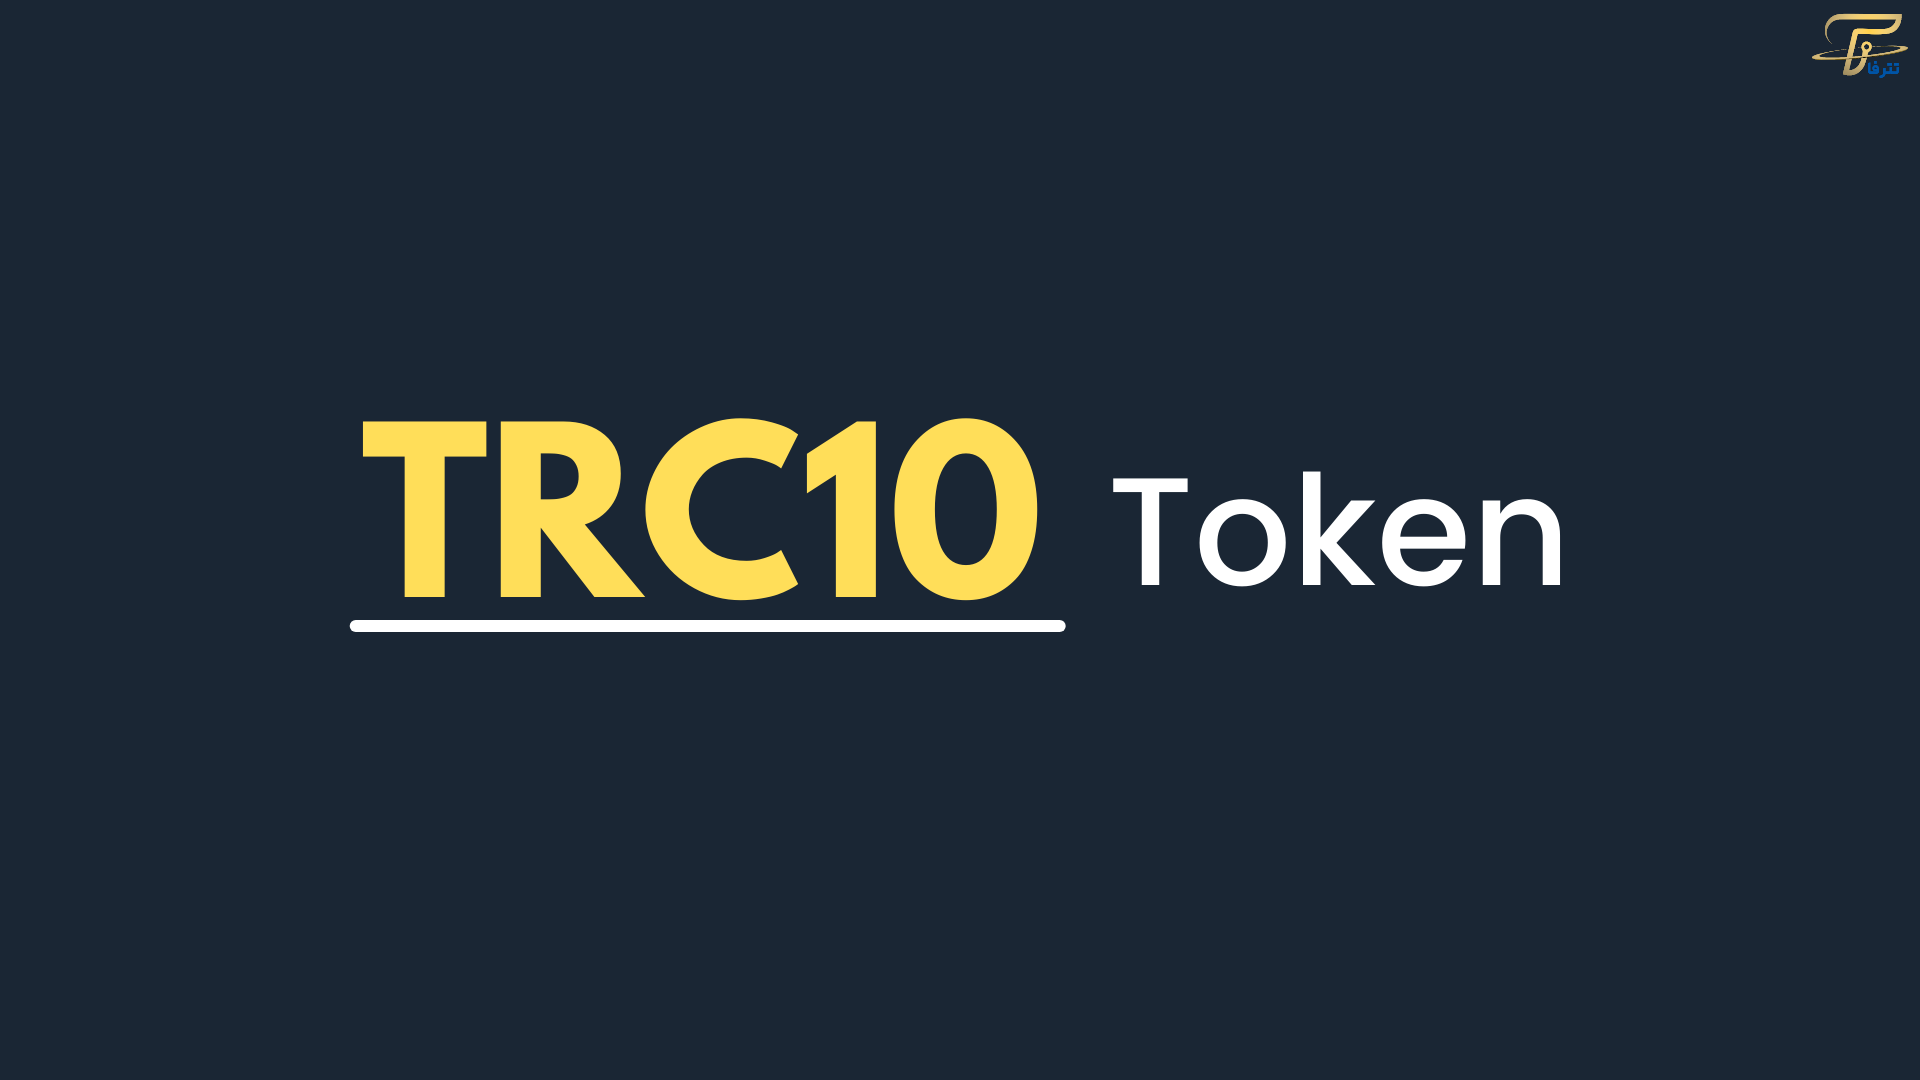  TRC10 یکی از برترین توکن های اتریوم